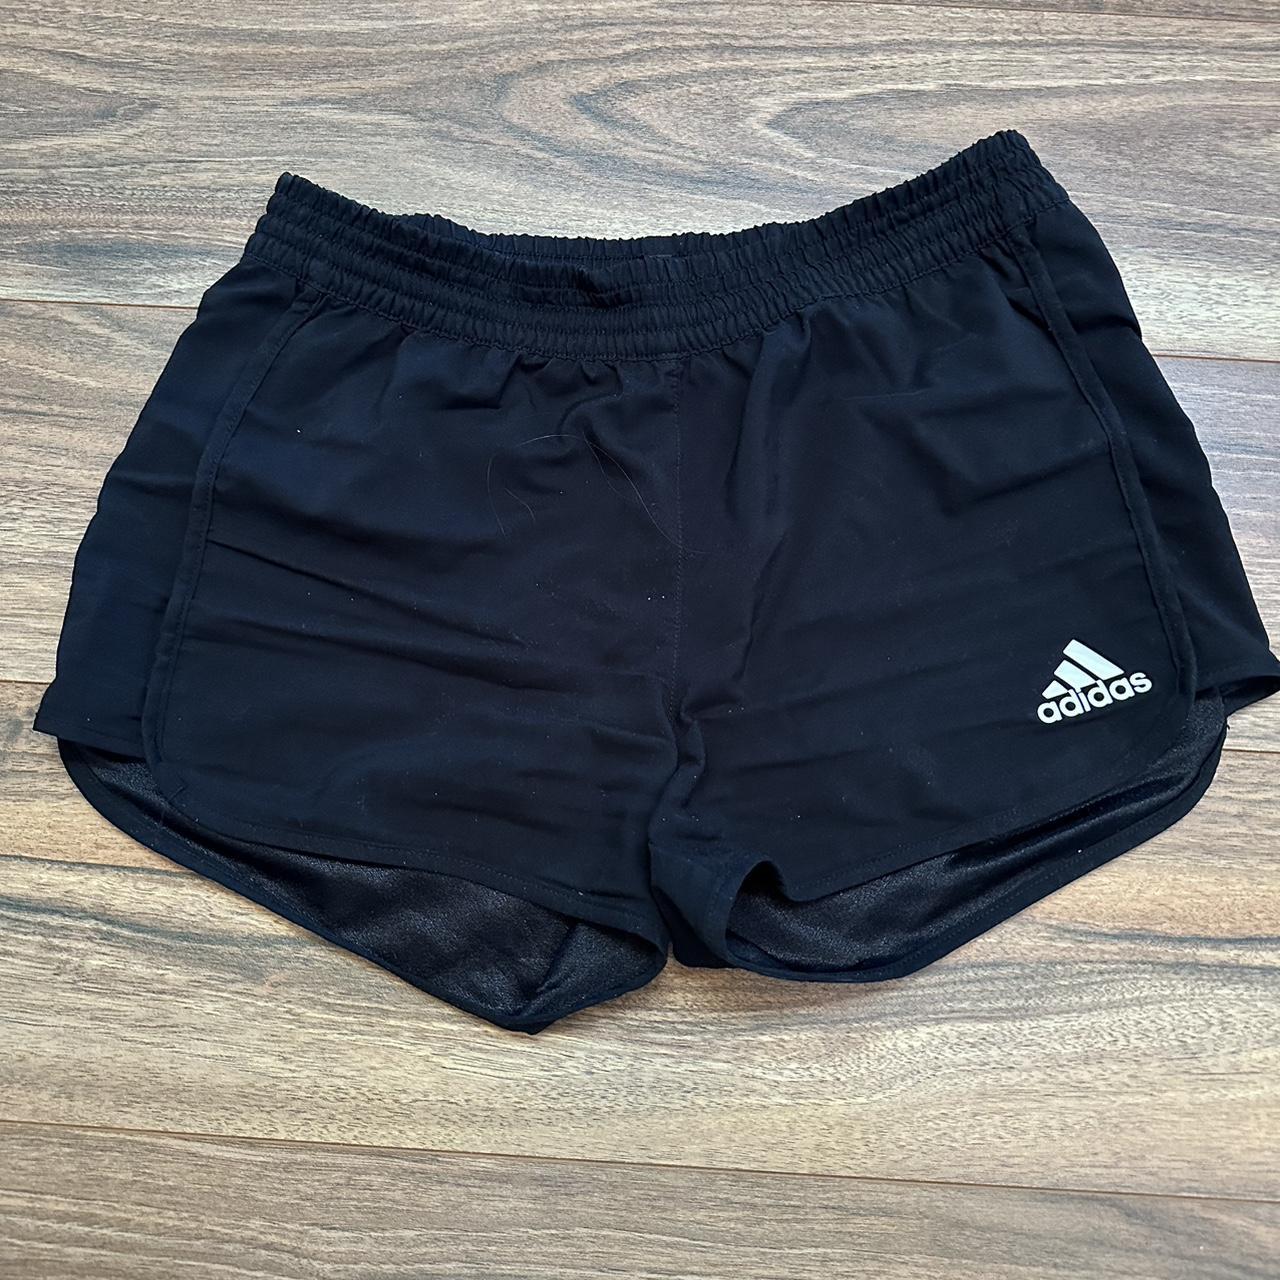 adidas black shorts worn in 11-12y - Depop